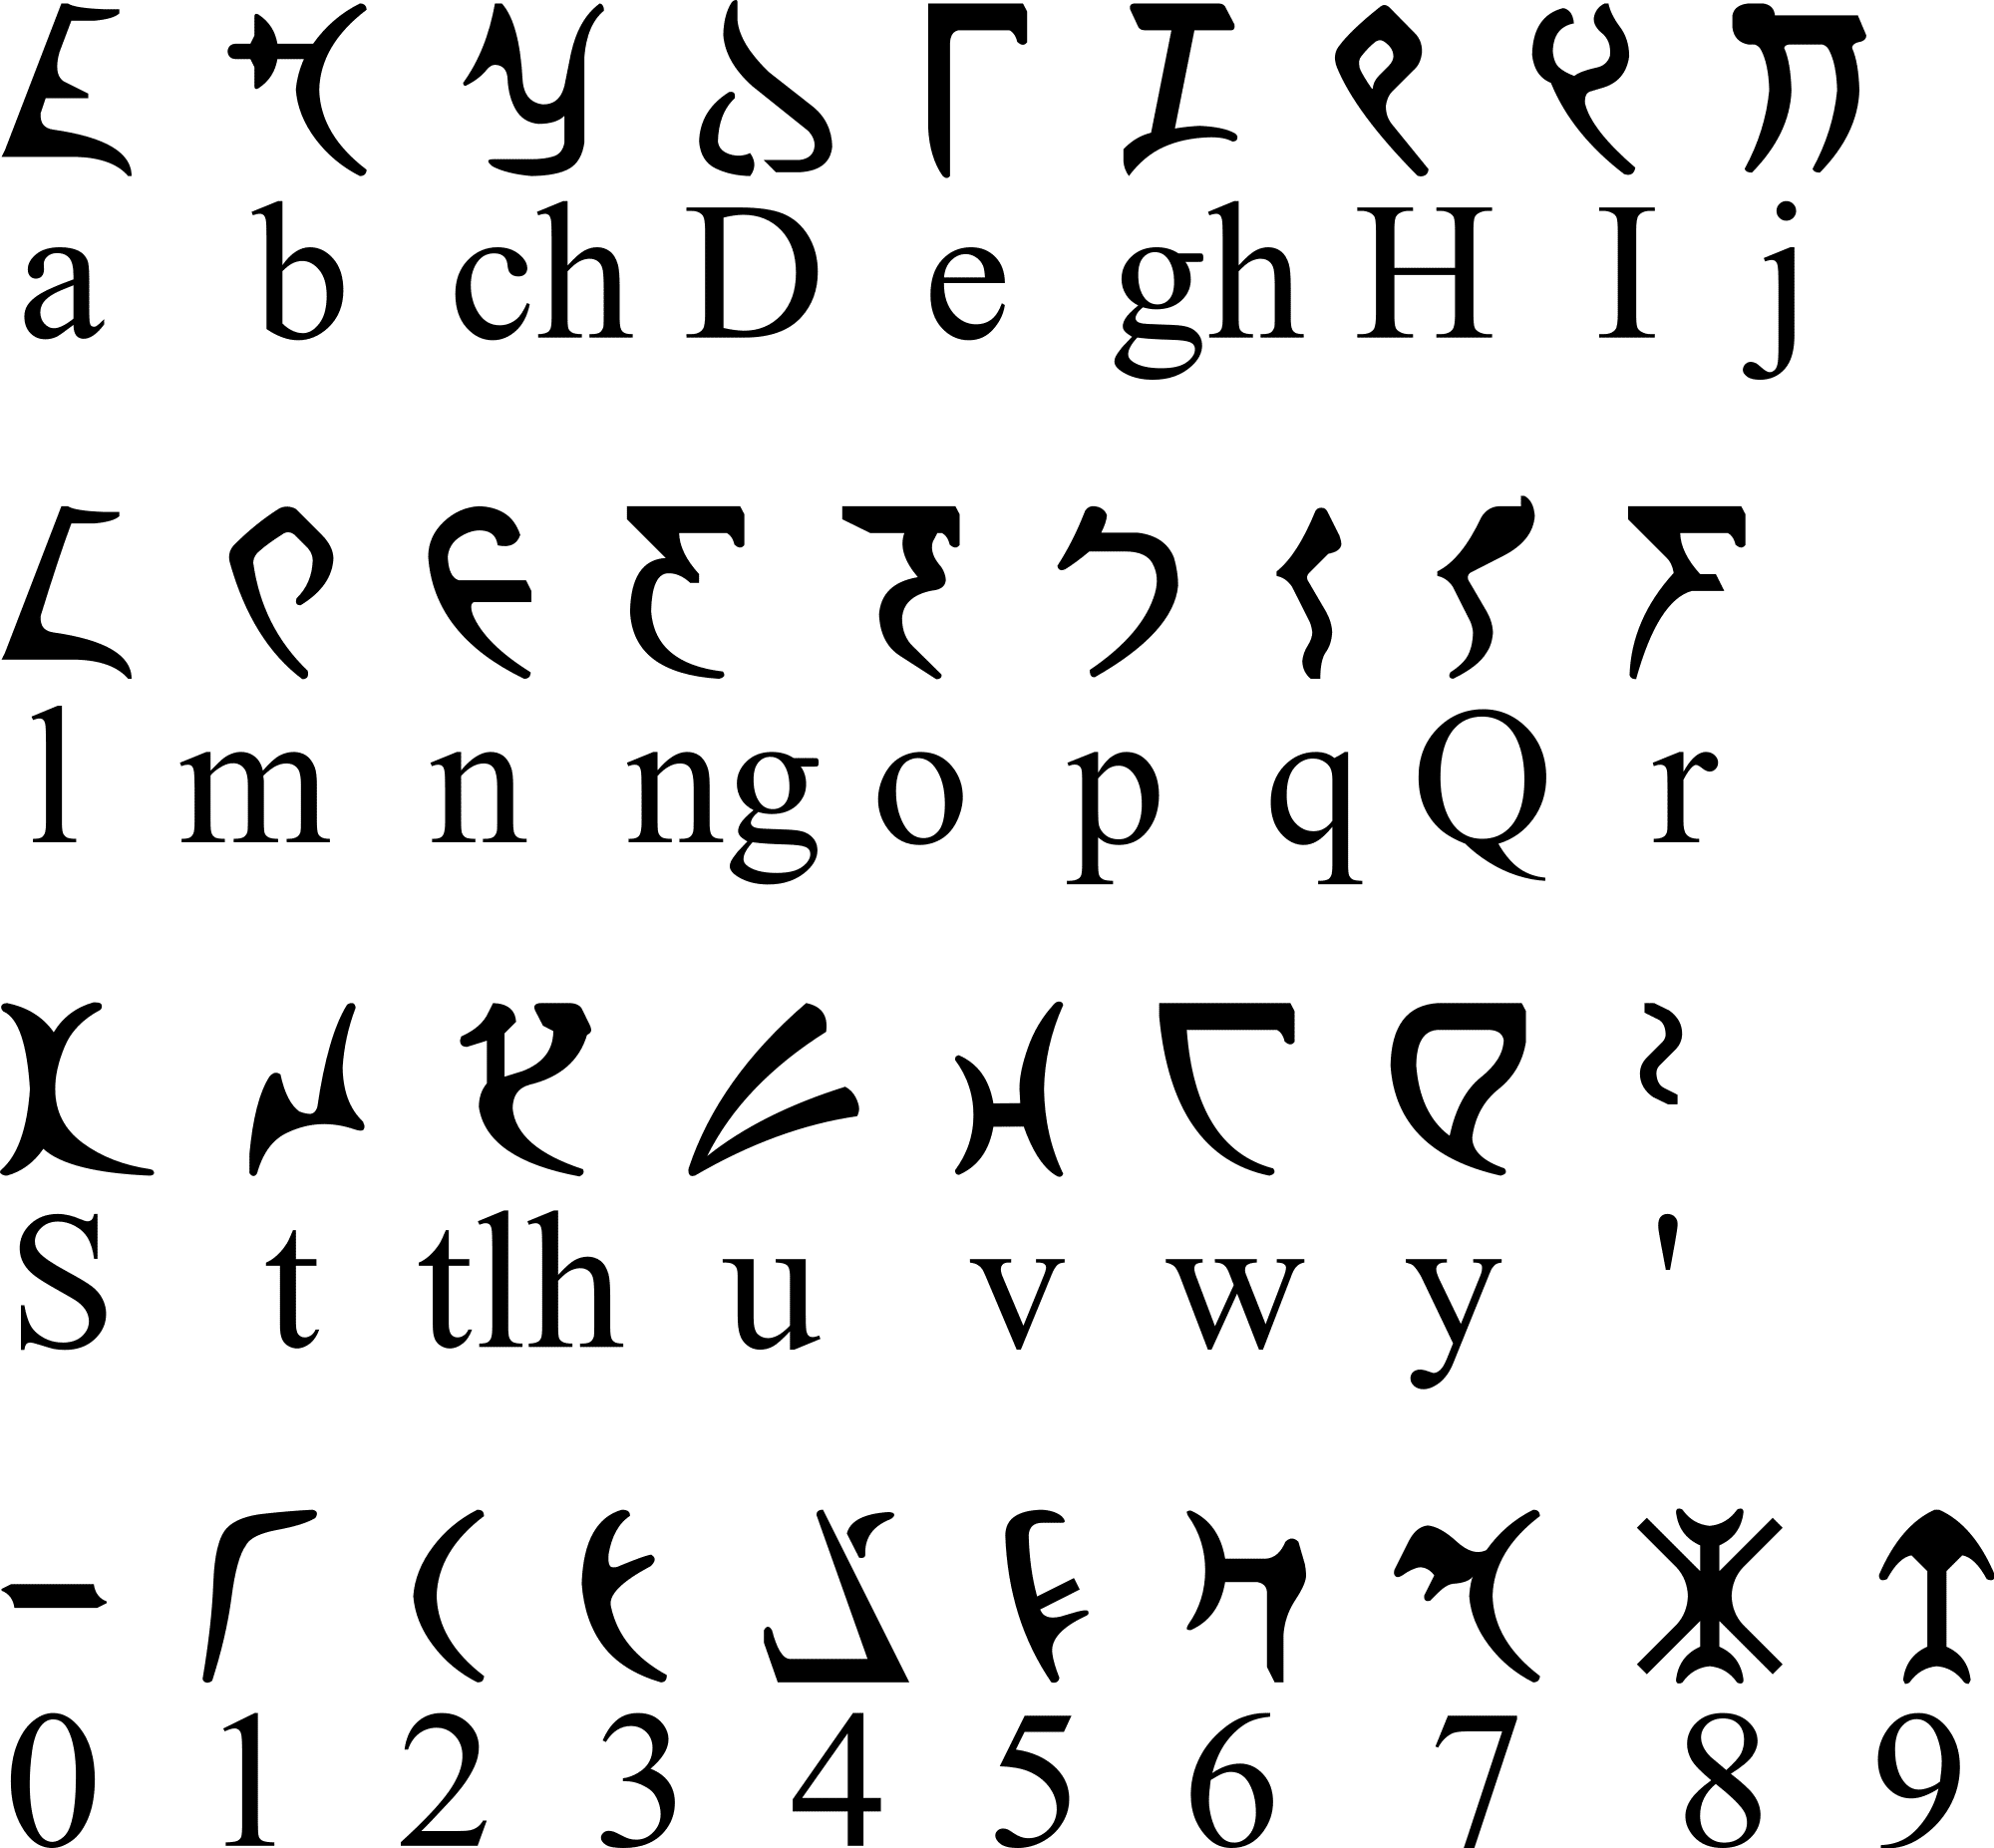 Язык для телефона шрифт. Клингонский язык алфавит. Клингонский язык письменность. Вымышленные языки. Инопланетный шрифт.